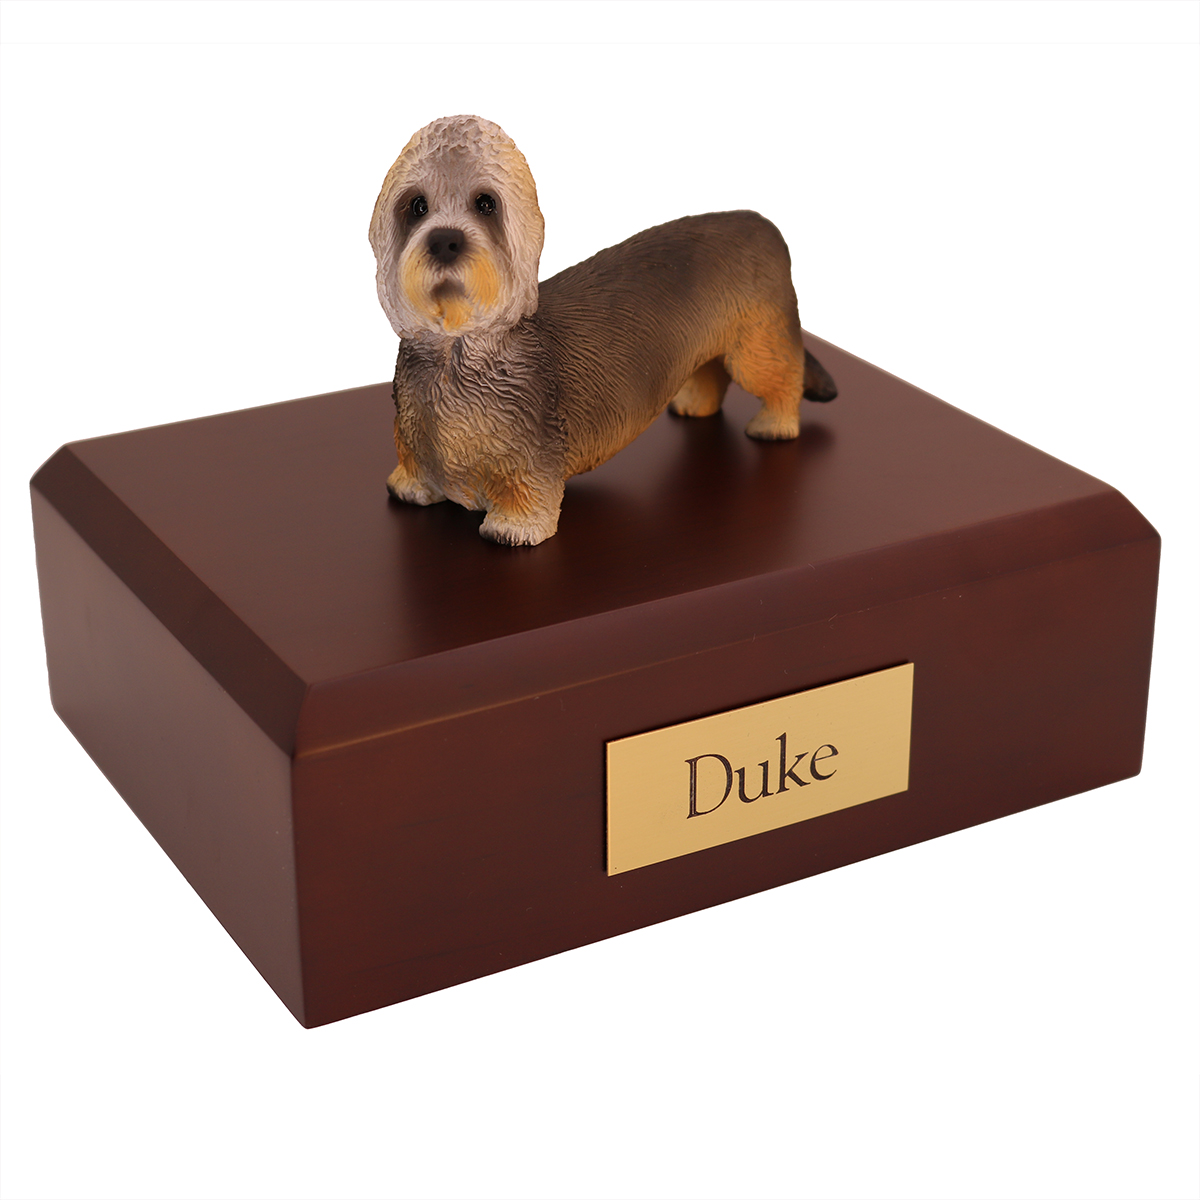 Dog, Dandie Dinmont Terrier - Figurine Urn